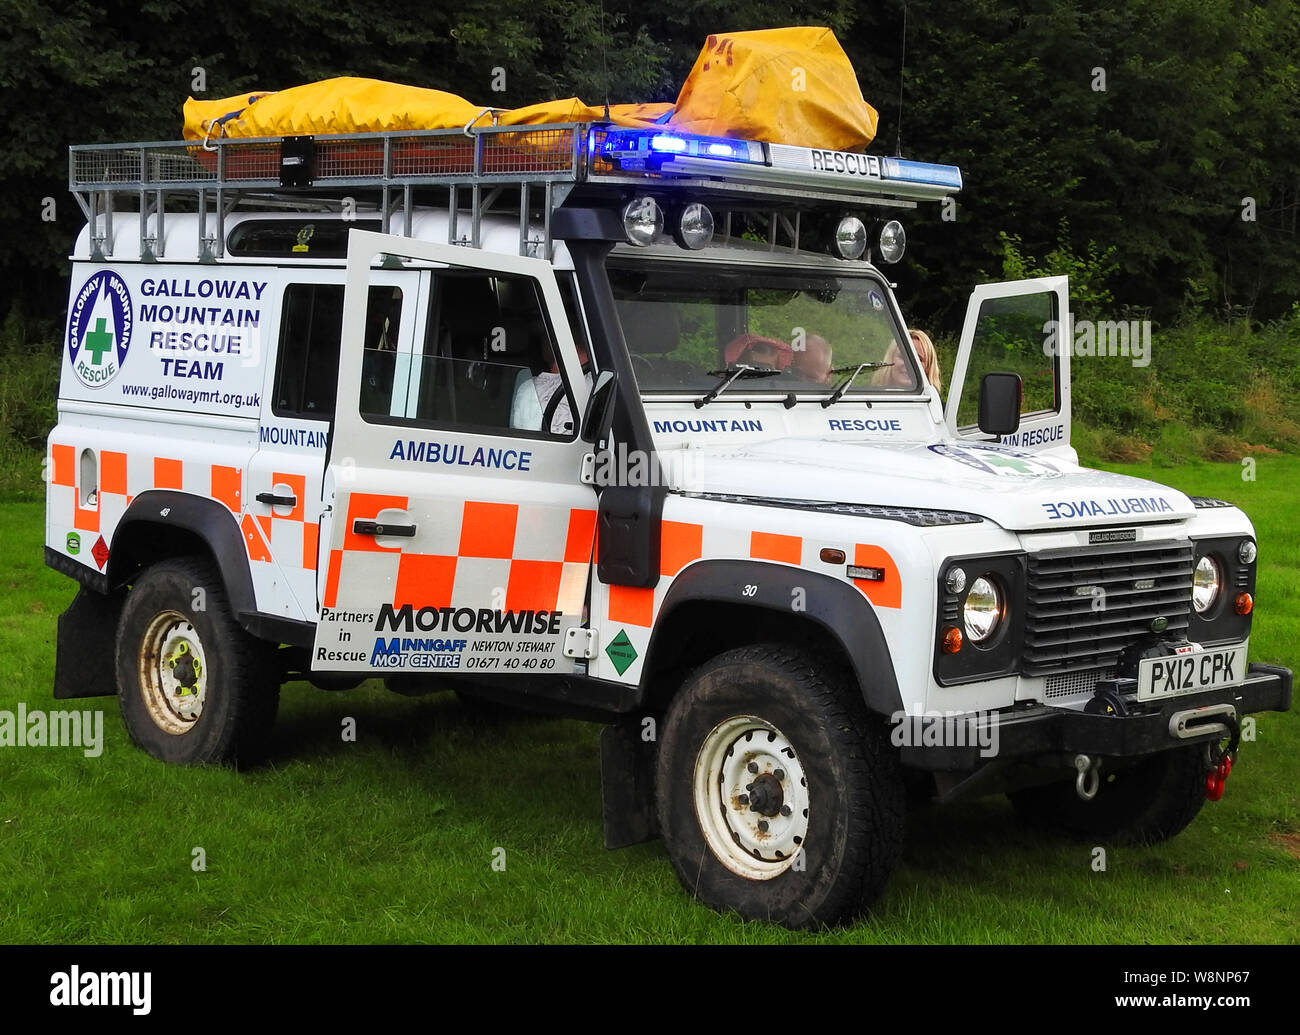 Galloway Mountain Rescue Ambulance 2019 Stock Photo